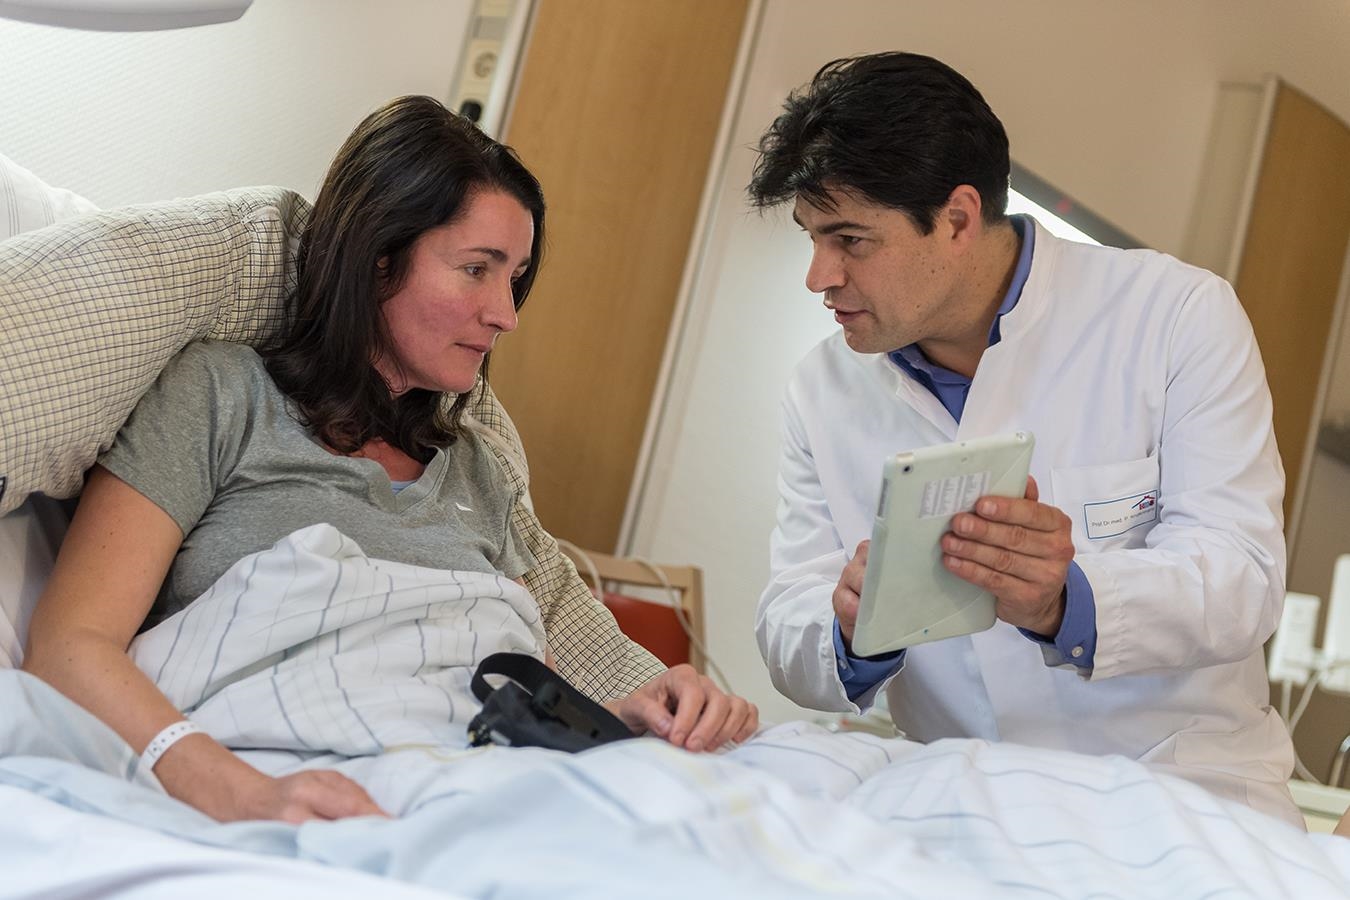 Ein Arzt erklärt einer Patientin etwas mithilfe eines Tablets